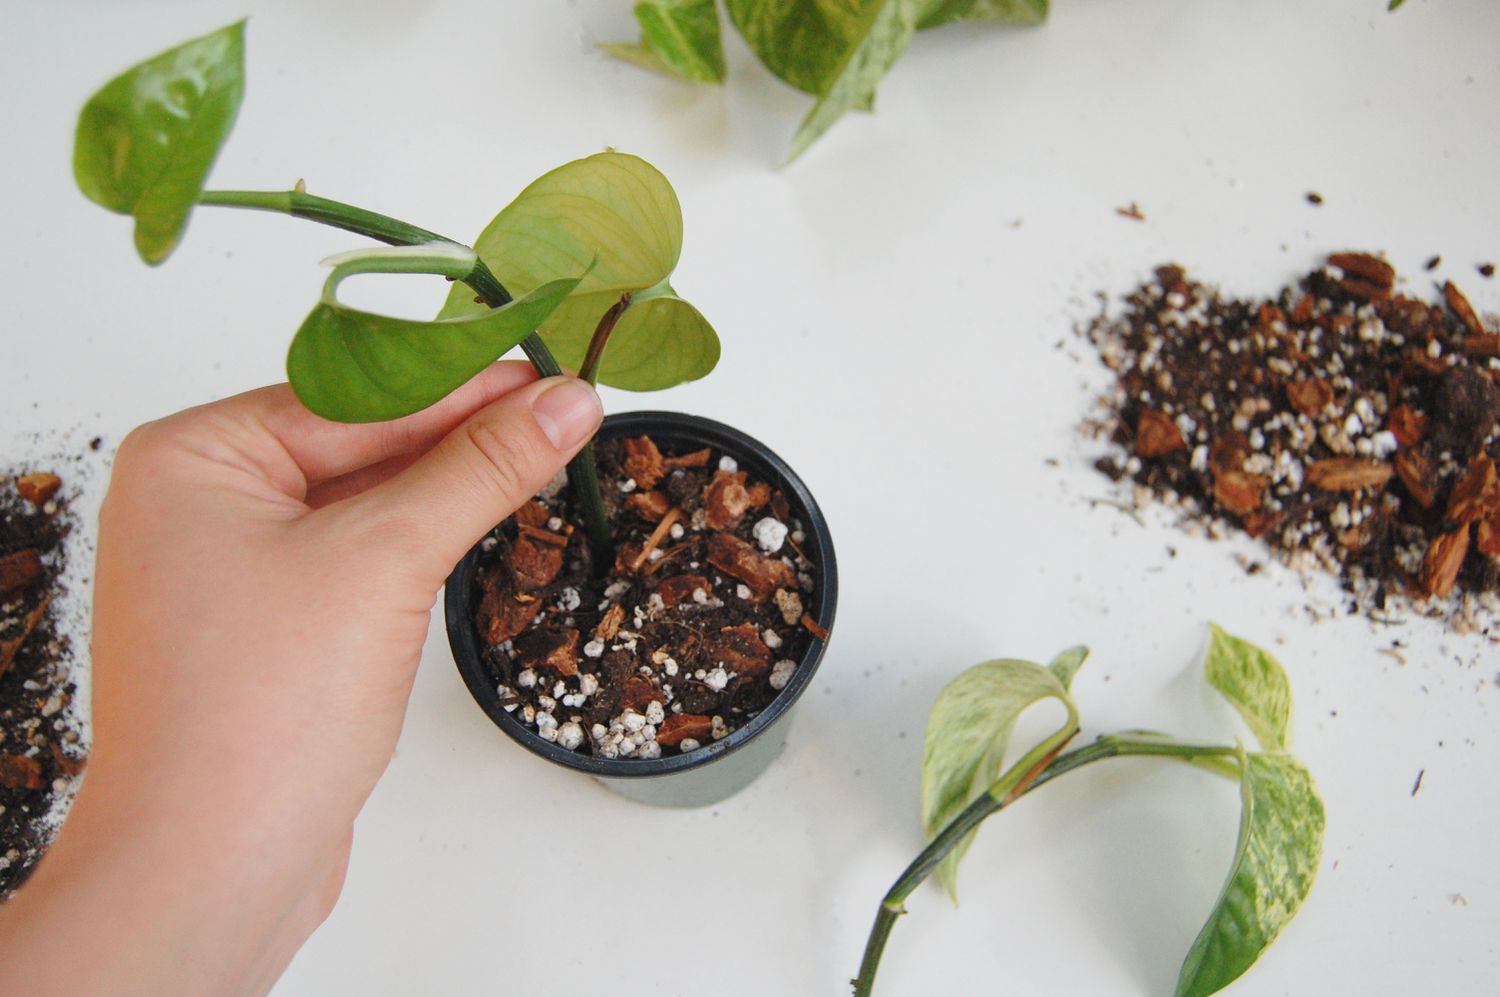 Ein Steckling von Pothos wird zur Vermehrung in Erde gepflanzt.